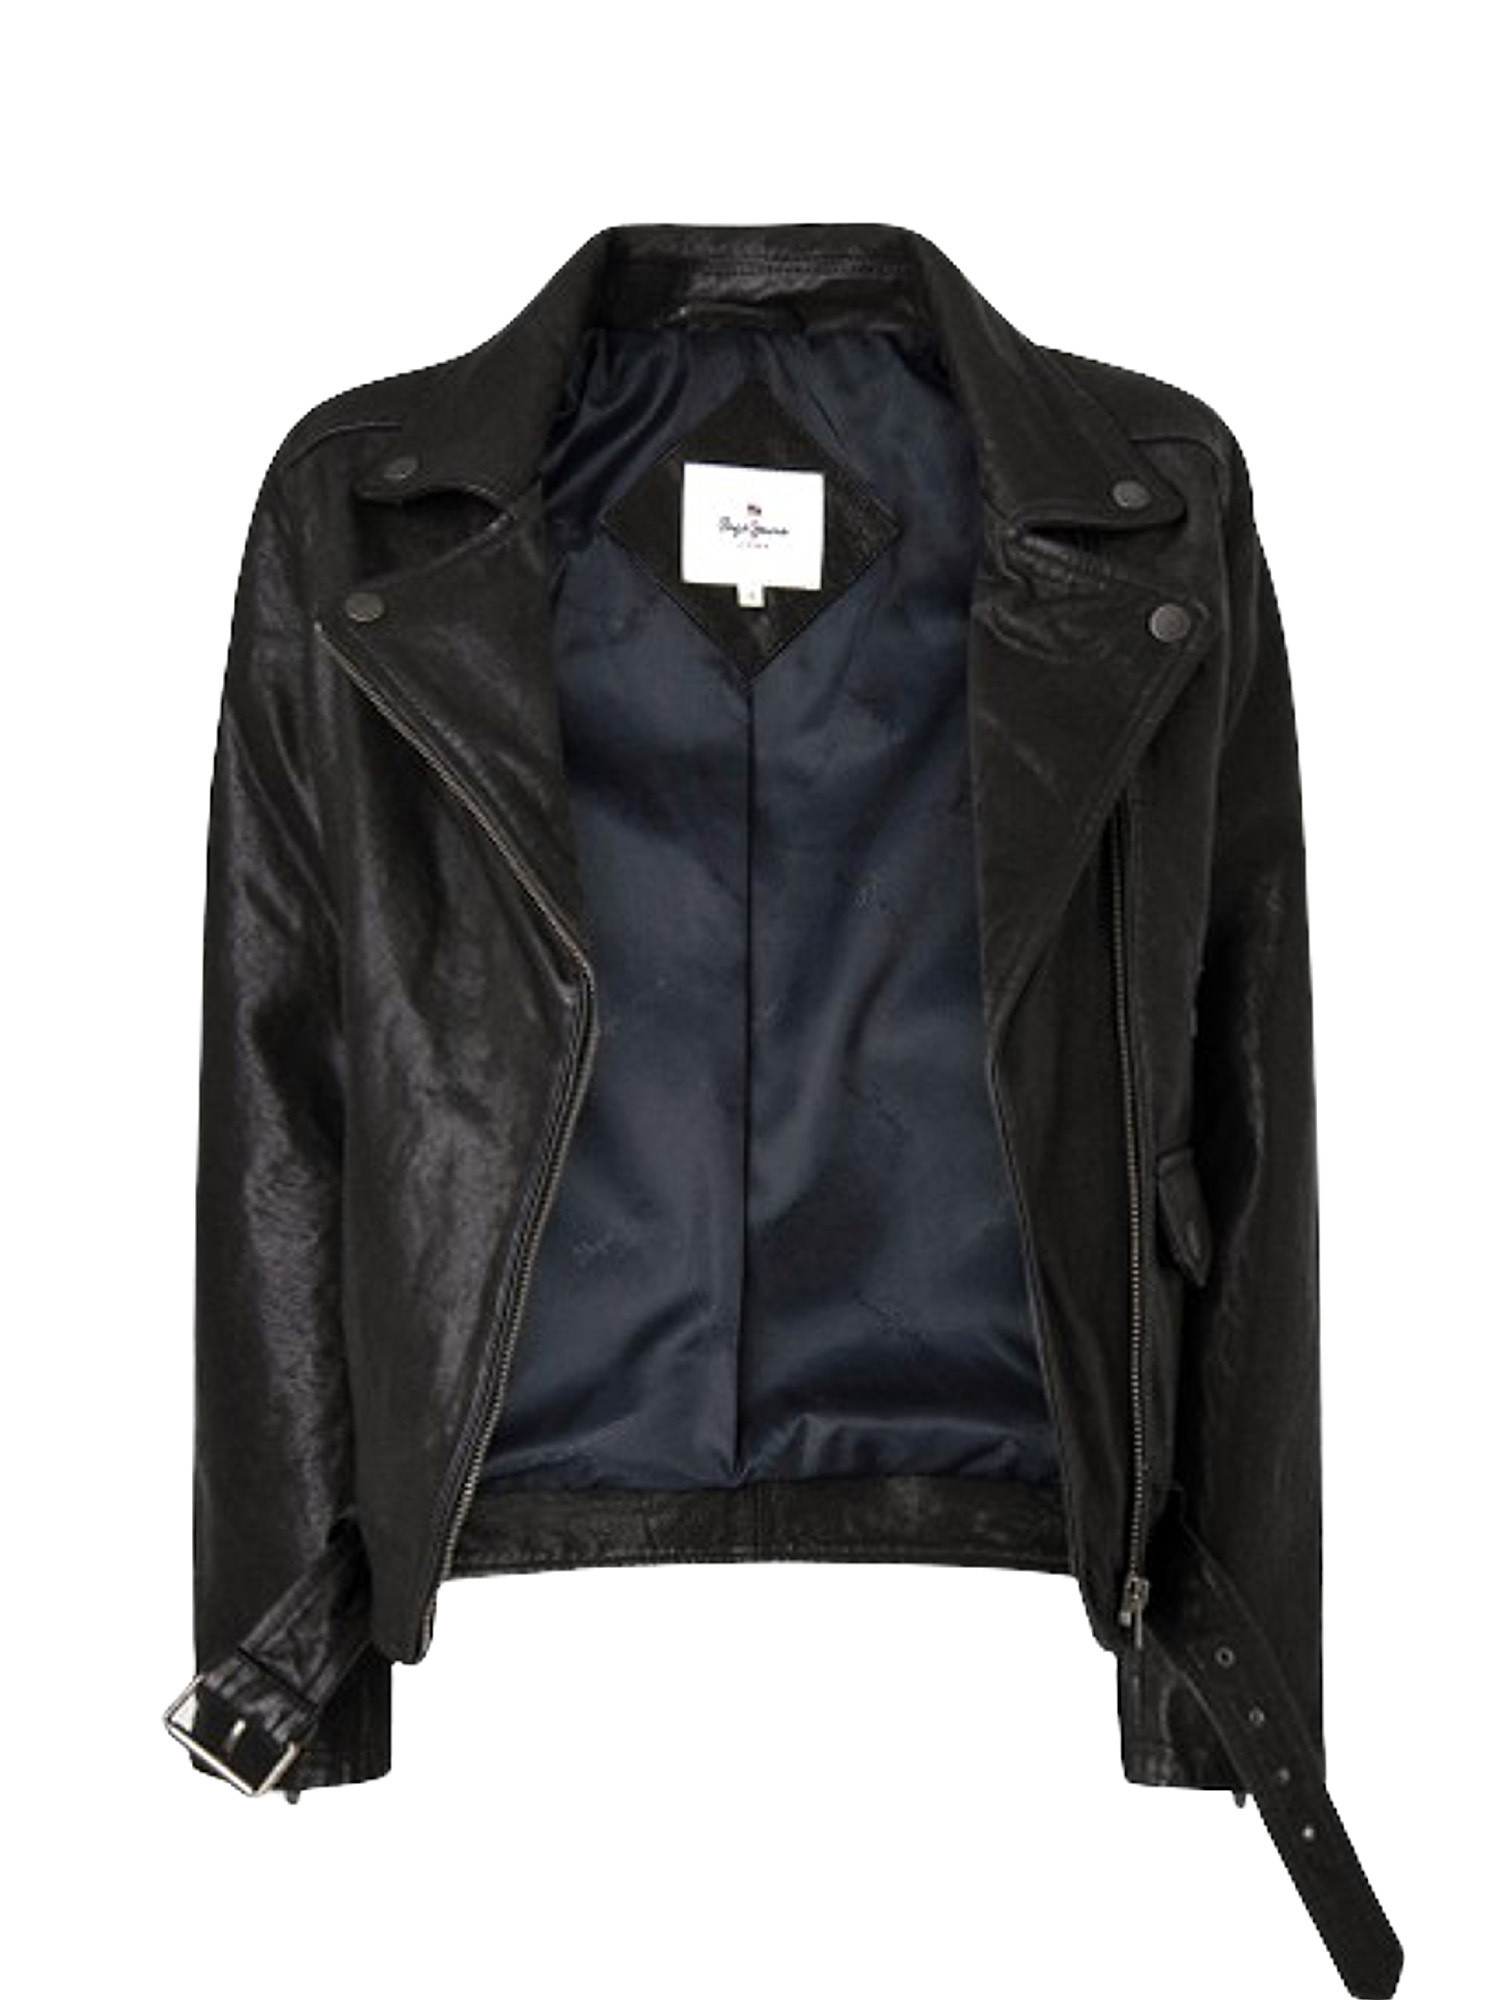 Fify biker leather jacket, Black, large image number 2